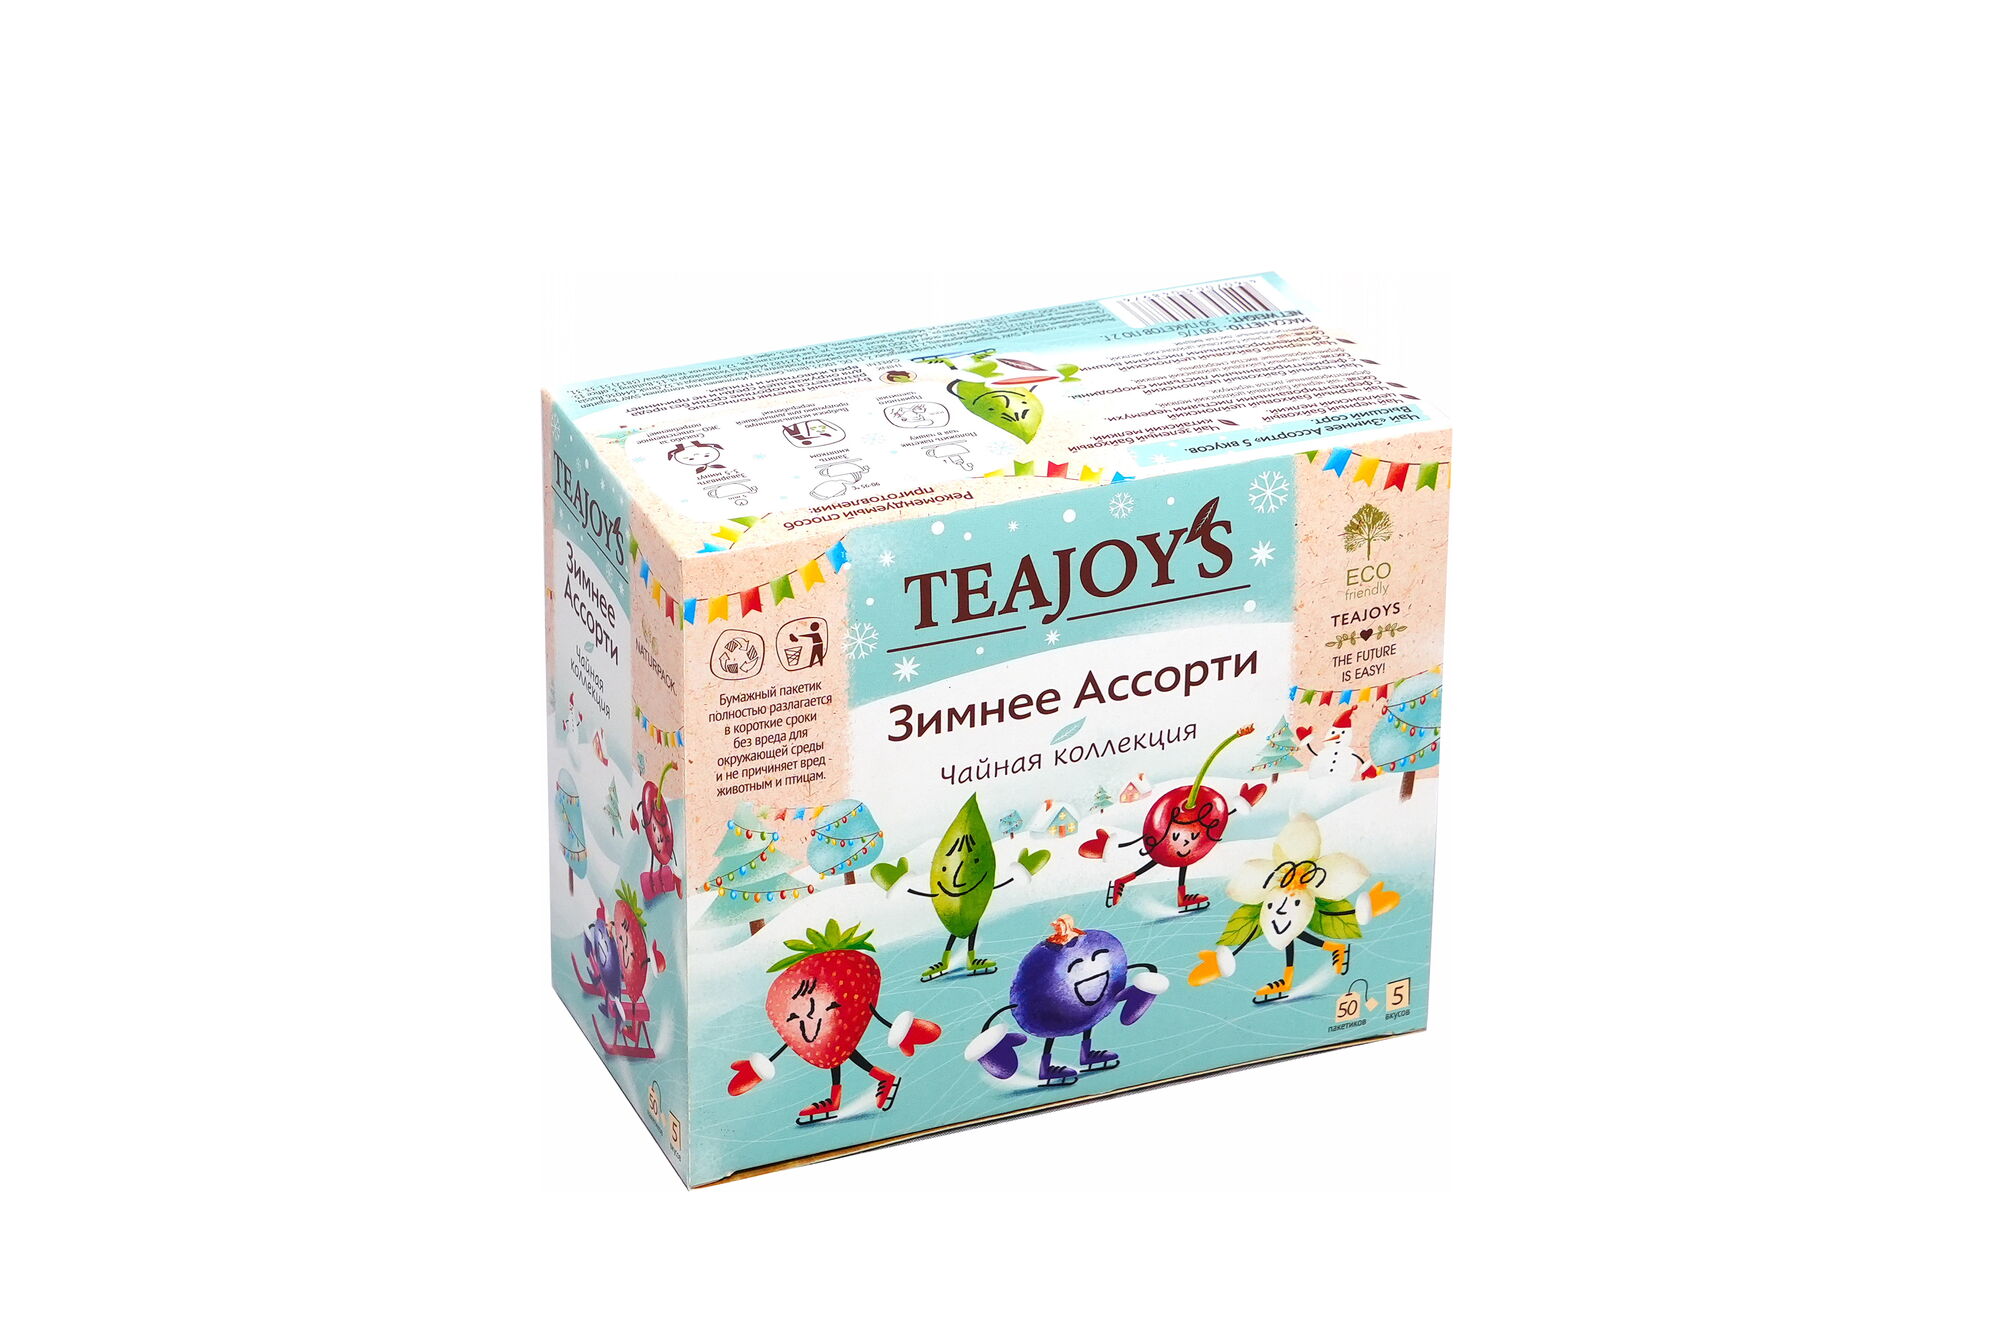 Чай TeaJoy`S Зимнее Ассорти 5 вкусов 50 пакетиков по 2 гр (в коробке 12 шт) 1